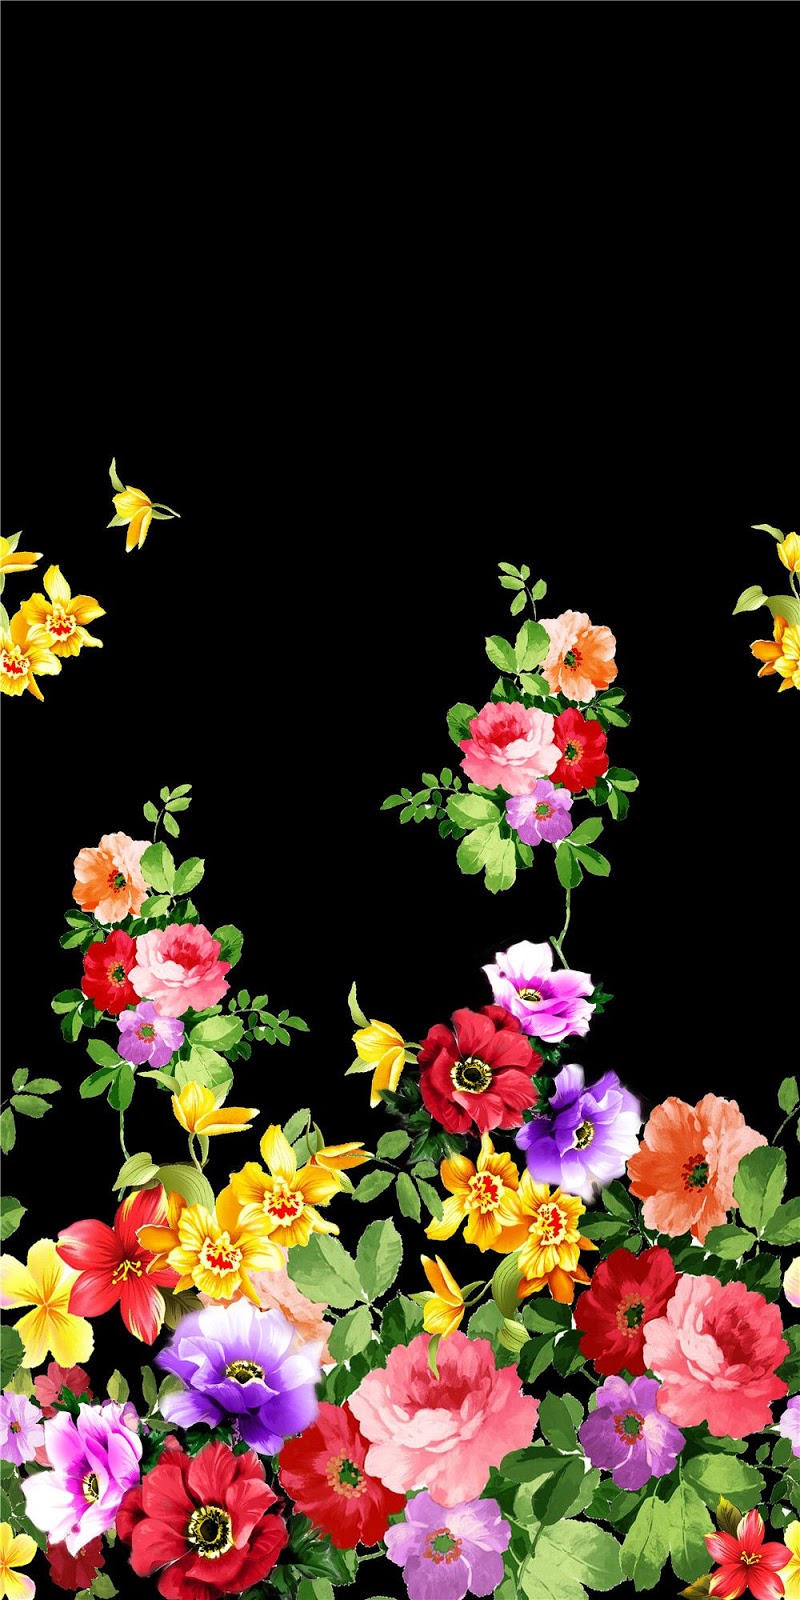 digital print wallpaper,flower,plant,floral design,petal,rose